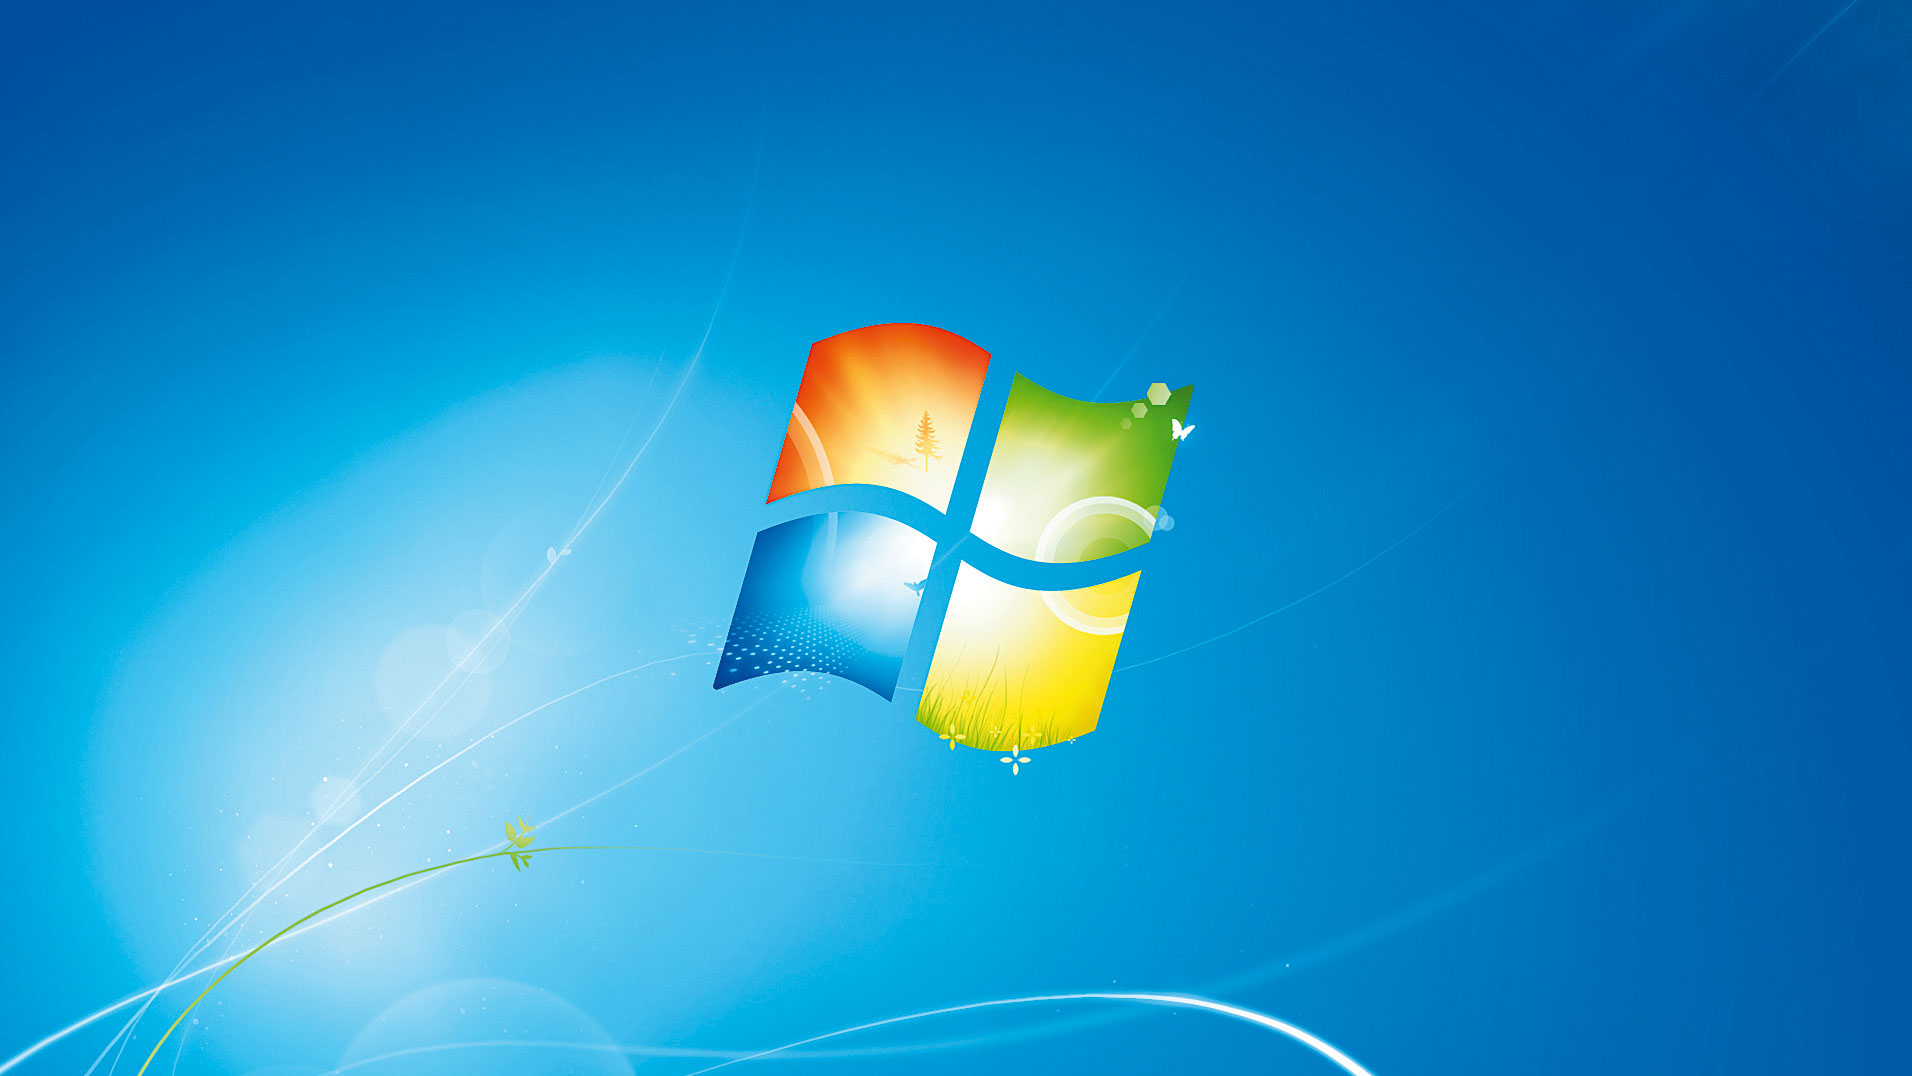 Hướng dẫn đầy đủ về Windows 7: Bạn muốn tối ưu hóa trải nghiệm sử dụng Windows 7 với các chức năng và tính năng tuyệt vời khác nhau? Hãy xem các hướng dẫn đầy đủ về Windows 7 trong hình ảnh này, từ cài đặt đến sử dụng, giúp bạn trở thành một chuyên gia về hệ điều hành này.